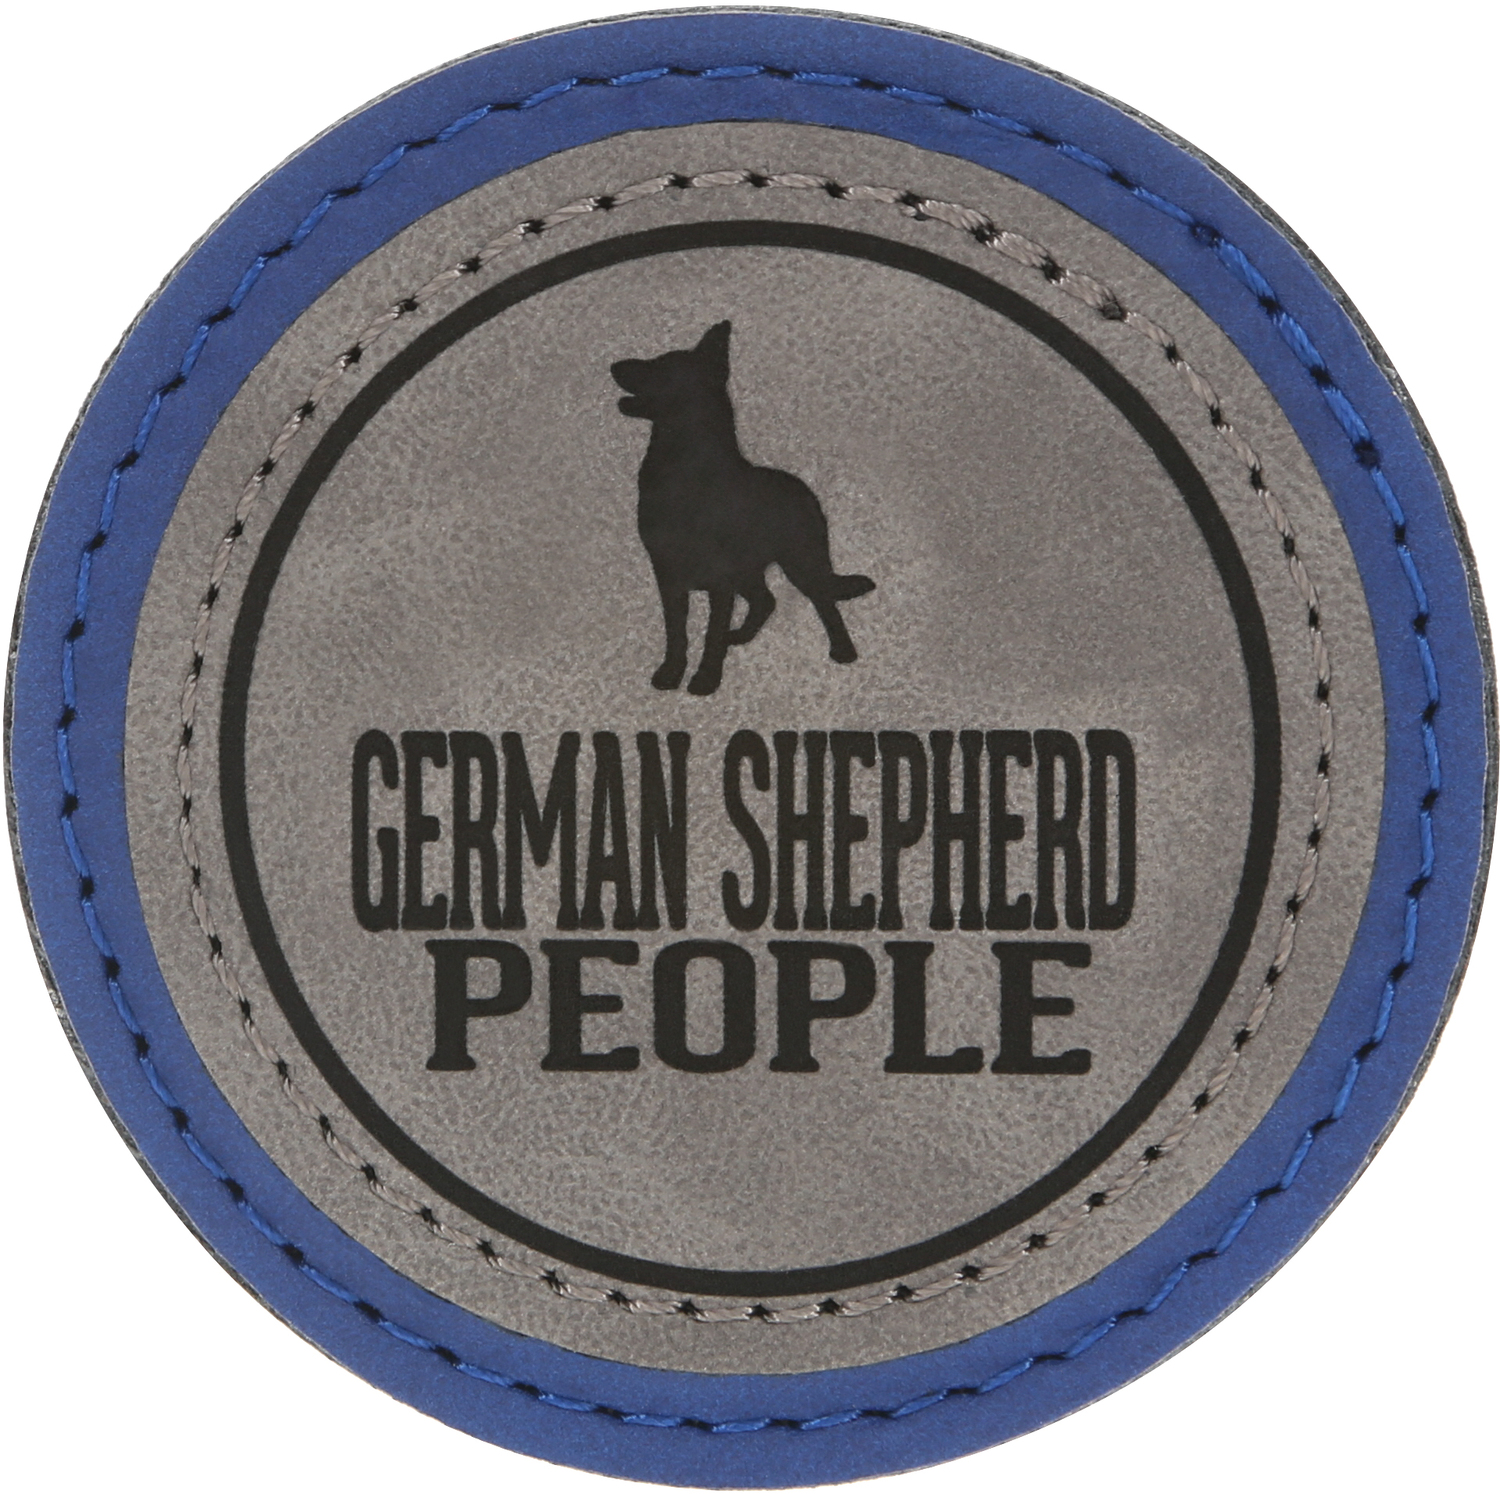 German Shepherd People by We Pets - German Shepherd People - 2.5" Magnet